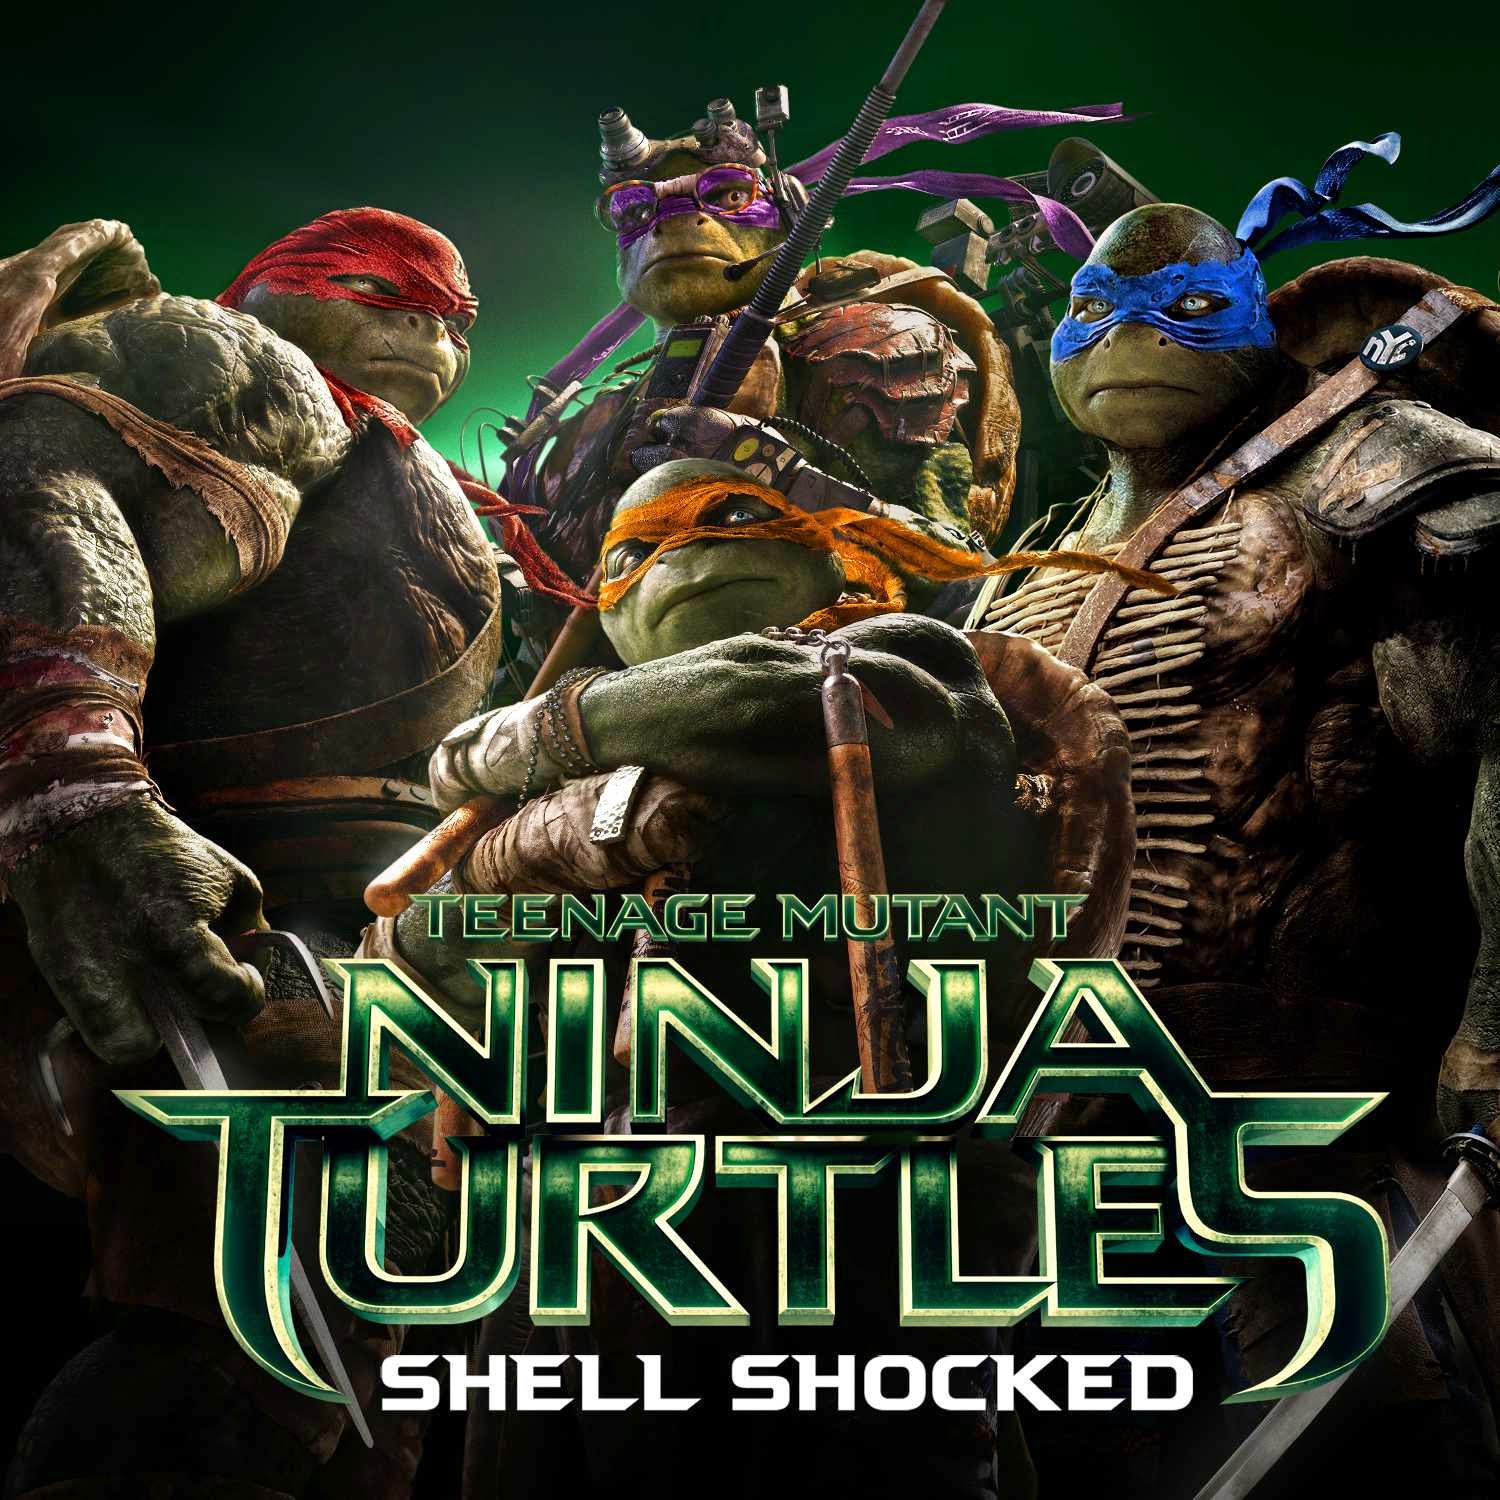 HQ Teenage Mutant Ninja Turtles (2014) Wallpapers | File 358.71Kb